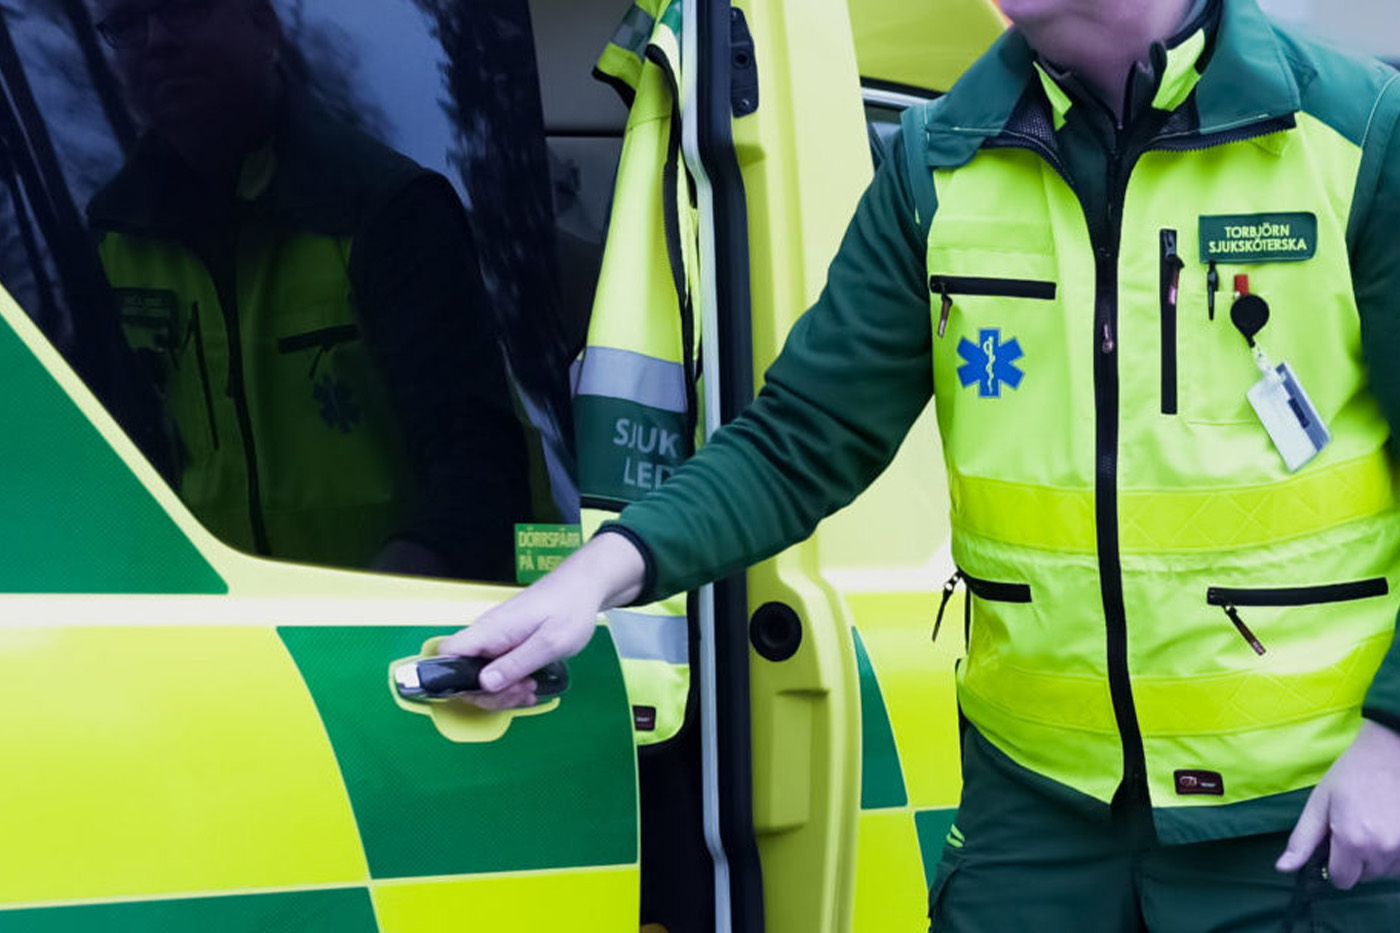 Ambulanspersonal öppnar dörr för att ta ut MobiMed monitor i väska för att mäta värden på patient